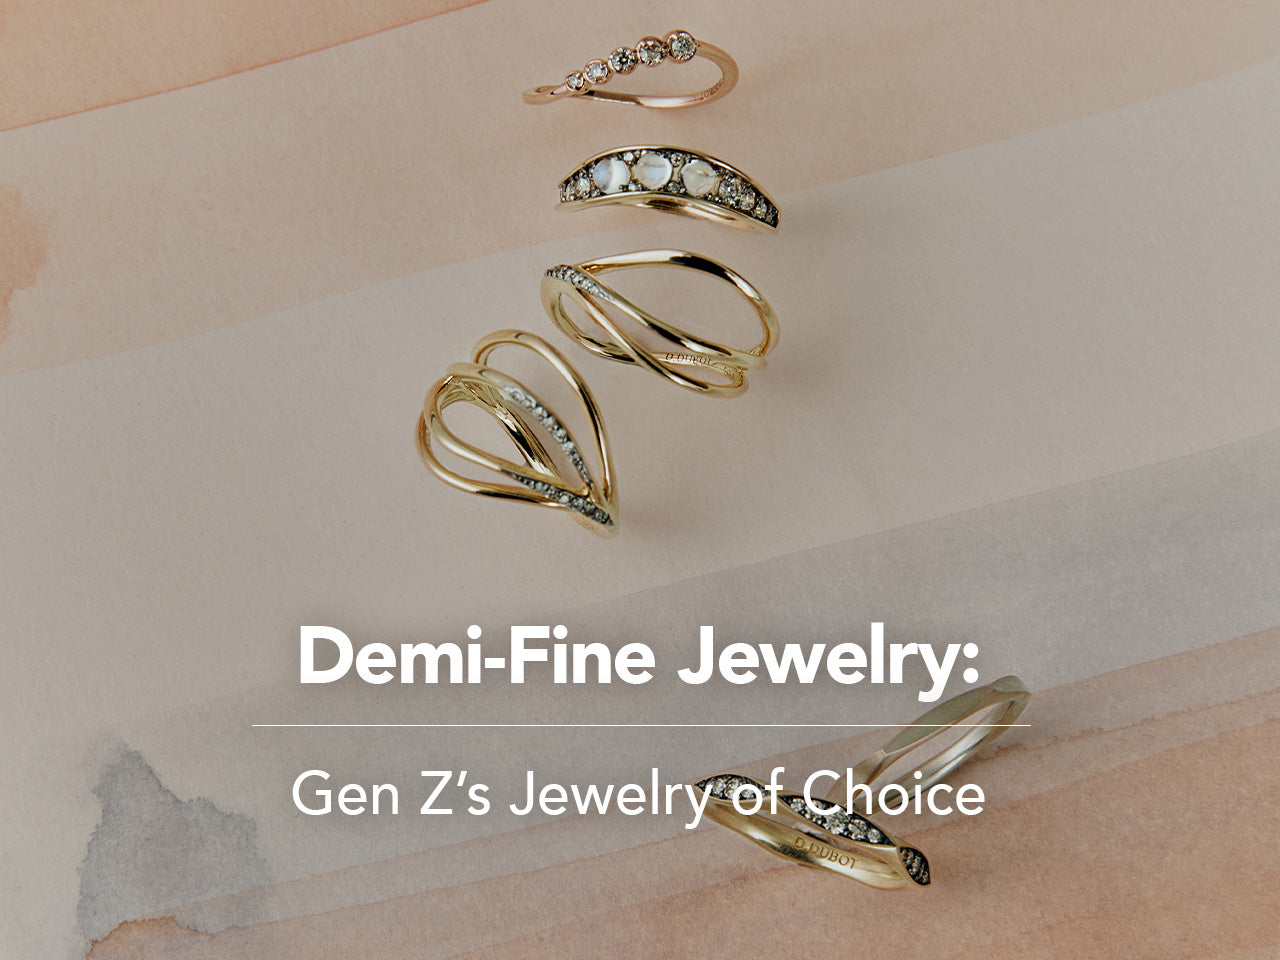 Demi-Fine Jewelry: Gen Z’s Jewelry of Choice